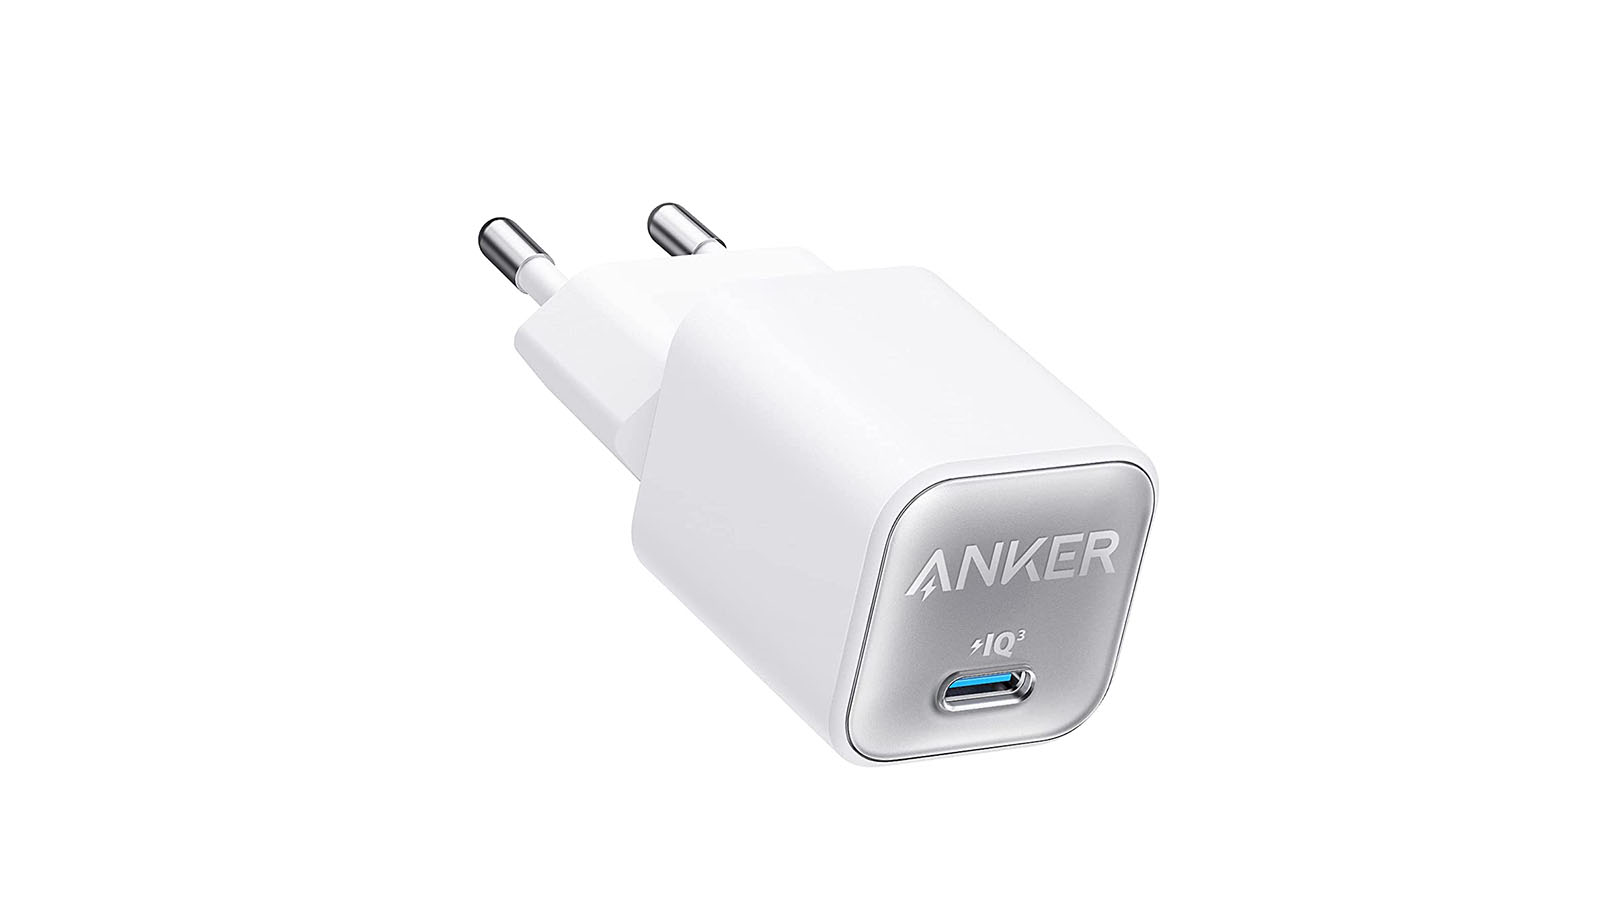 Anker 511 20W (Nano Pro) - Le meilleur rapport qualité/prix